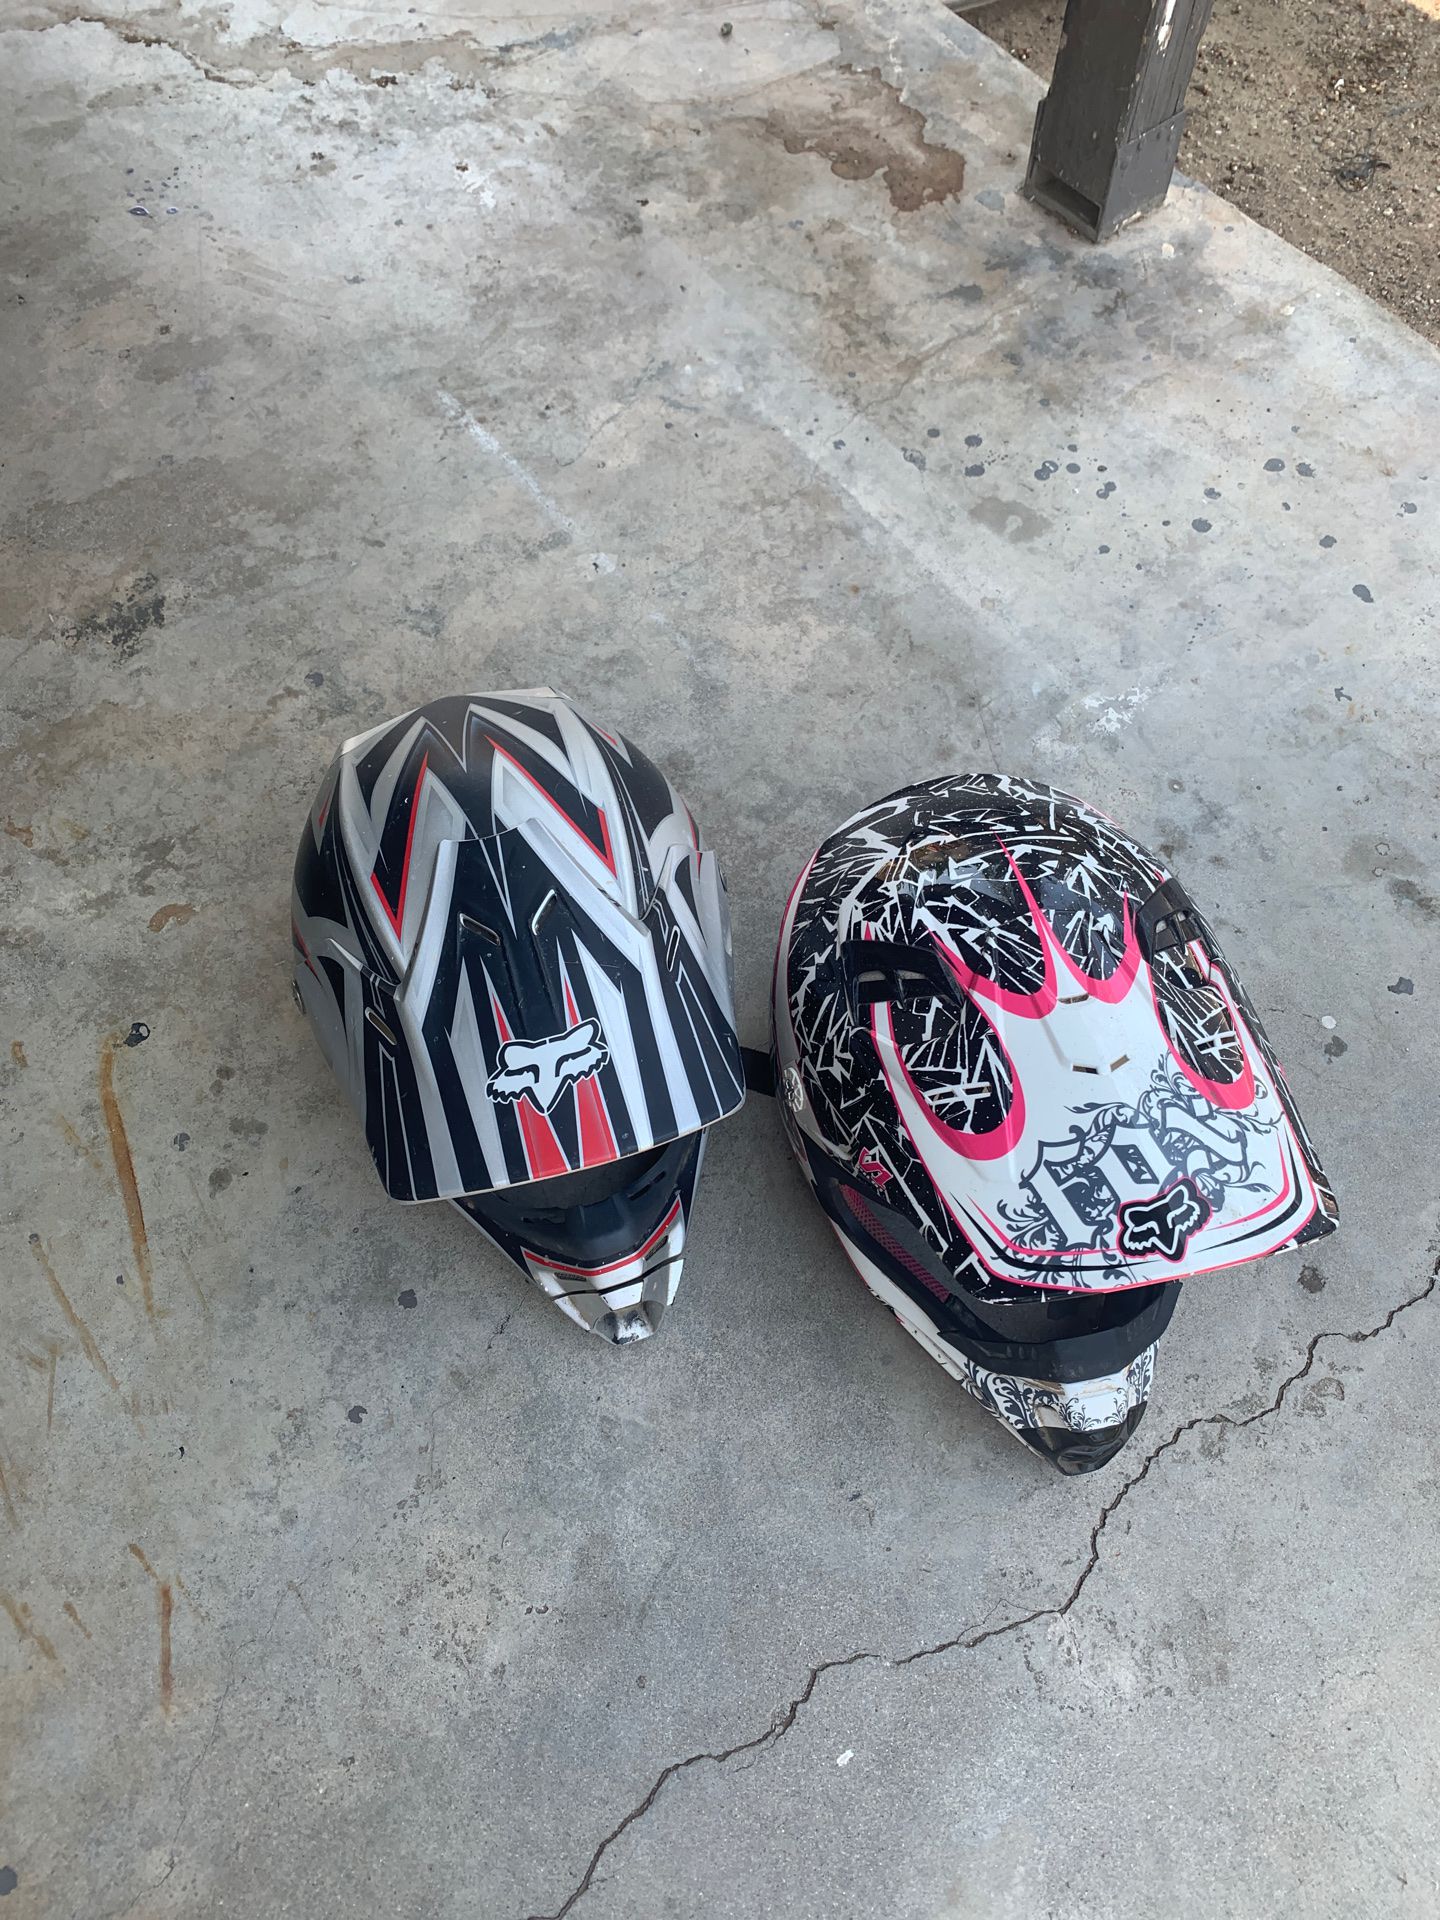 Fox Motorcycle helmets